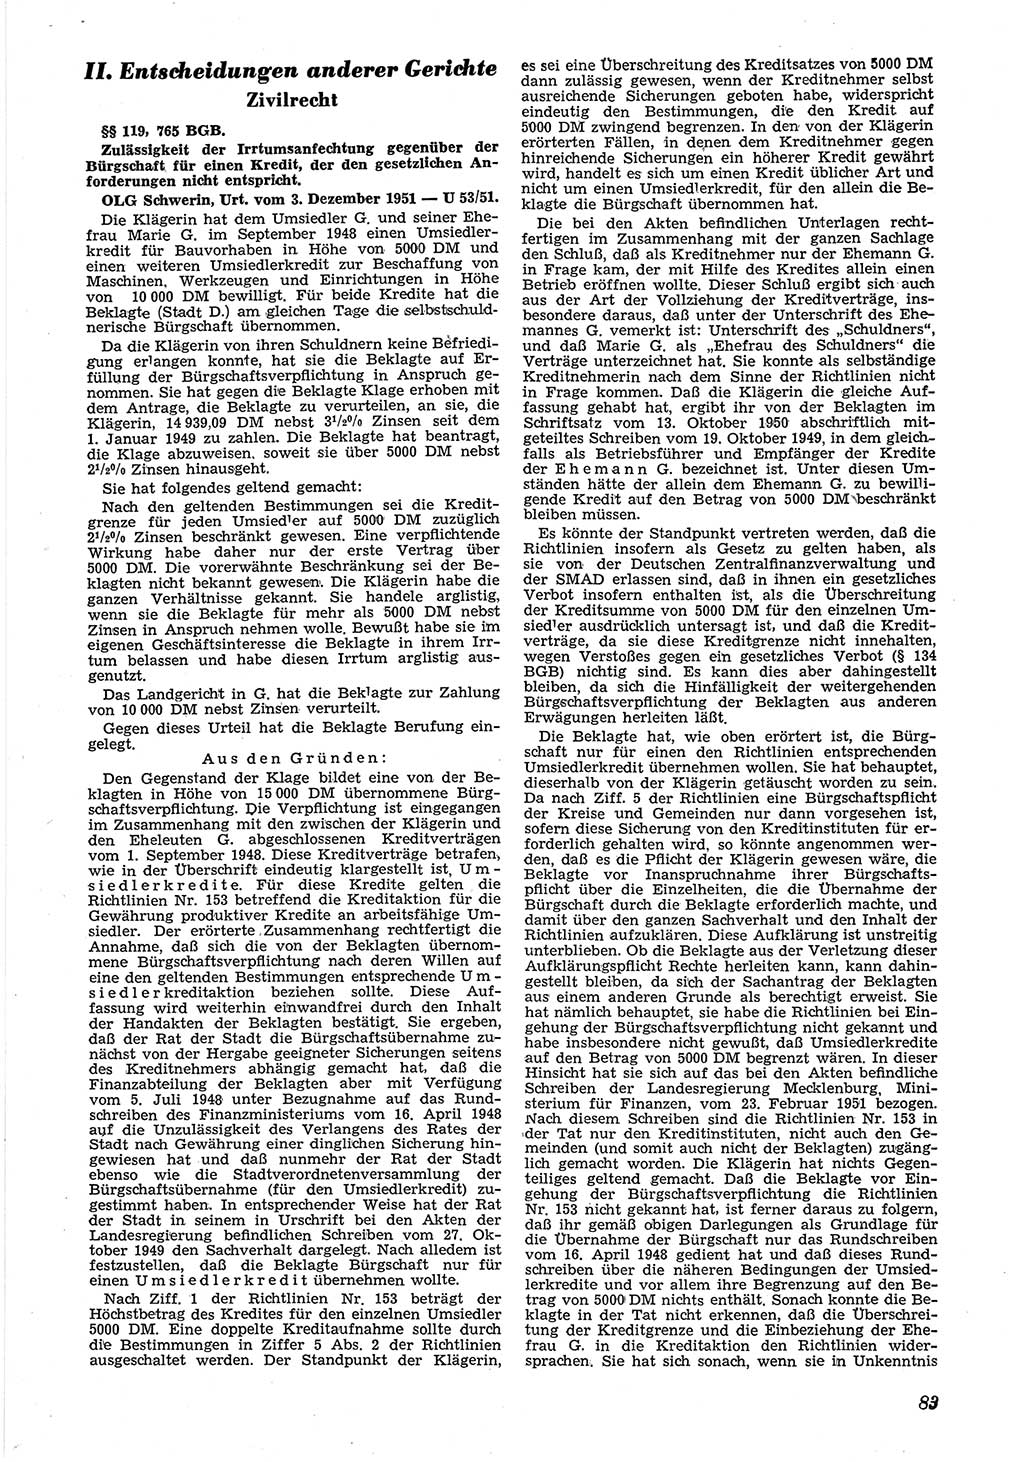 Neue Justiz (NJ), Zeitschrift für Recht und Rechtswissenschaft [Deutsche Demokratische Republik (DDR)], 6. Jahrgang 1952, Seite 83 (NJ DDR 1952, S. 83)